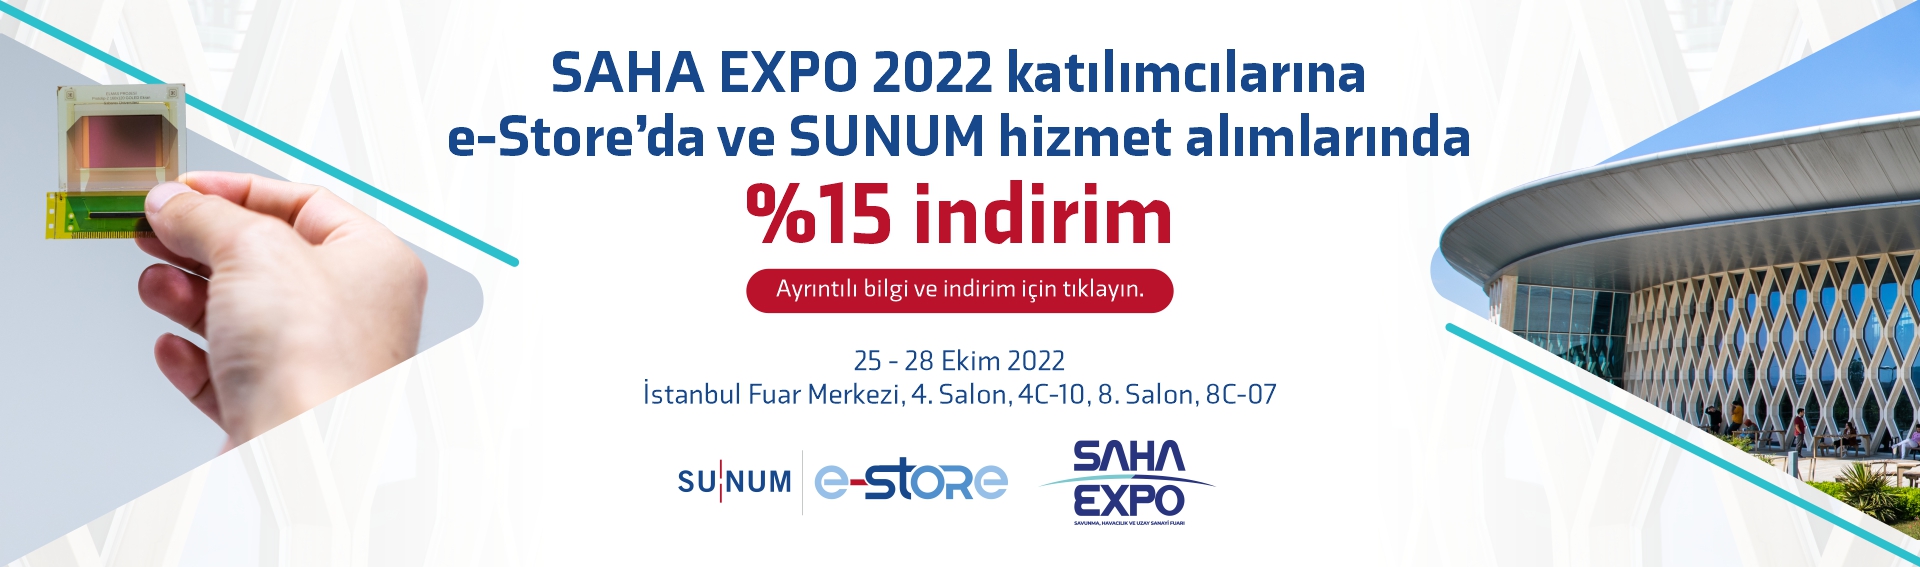 SAHA EXPO 2022 katılımcılarına e-Store’da ve SUNUM hizmet alımlarında %15 indirim